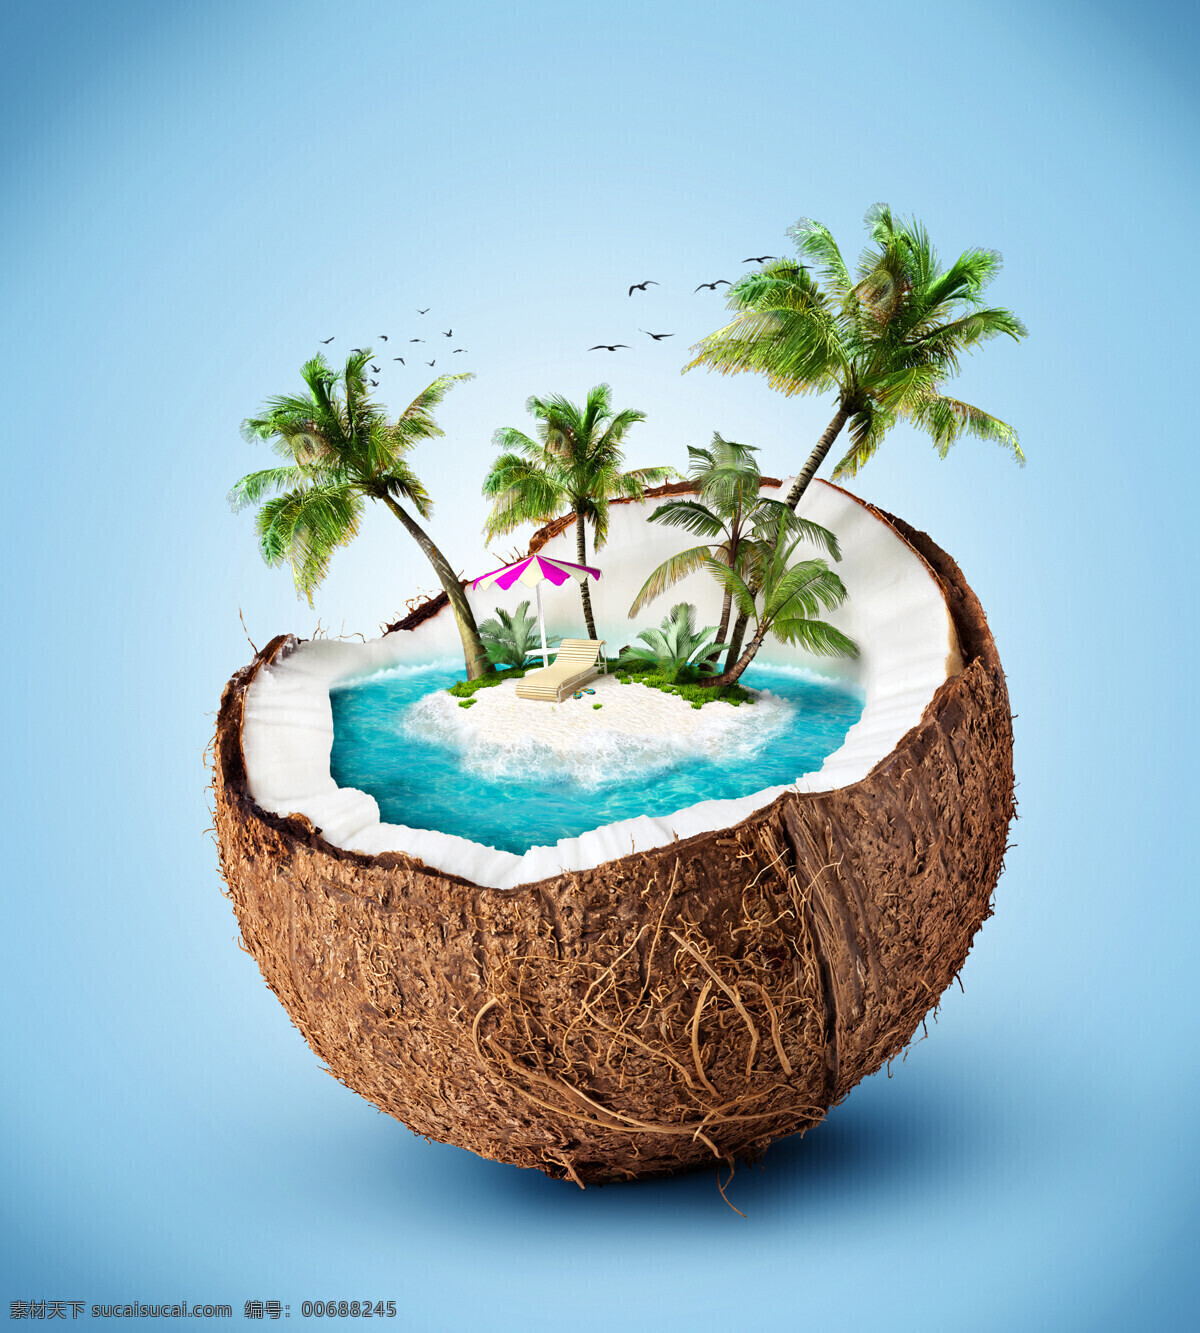 椰 壳 里 椰子树 椰壳 椰汁 岛屿 小岛 创意图片 其他类别 生活百科